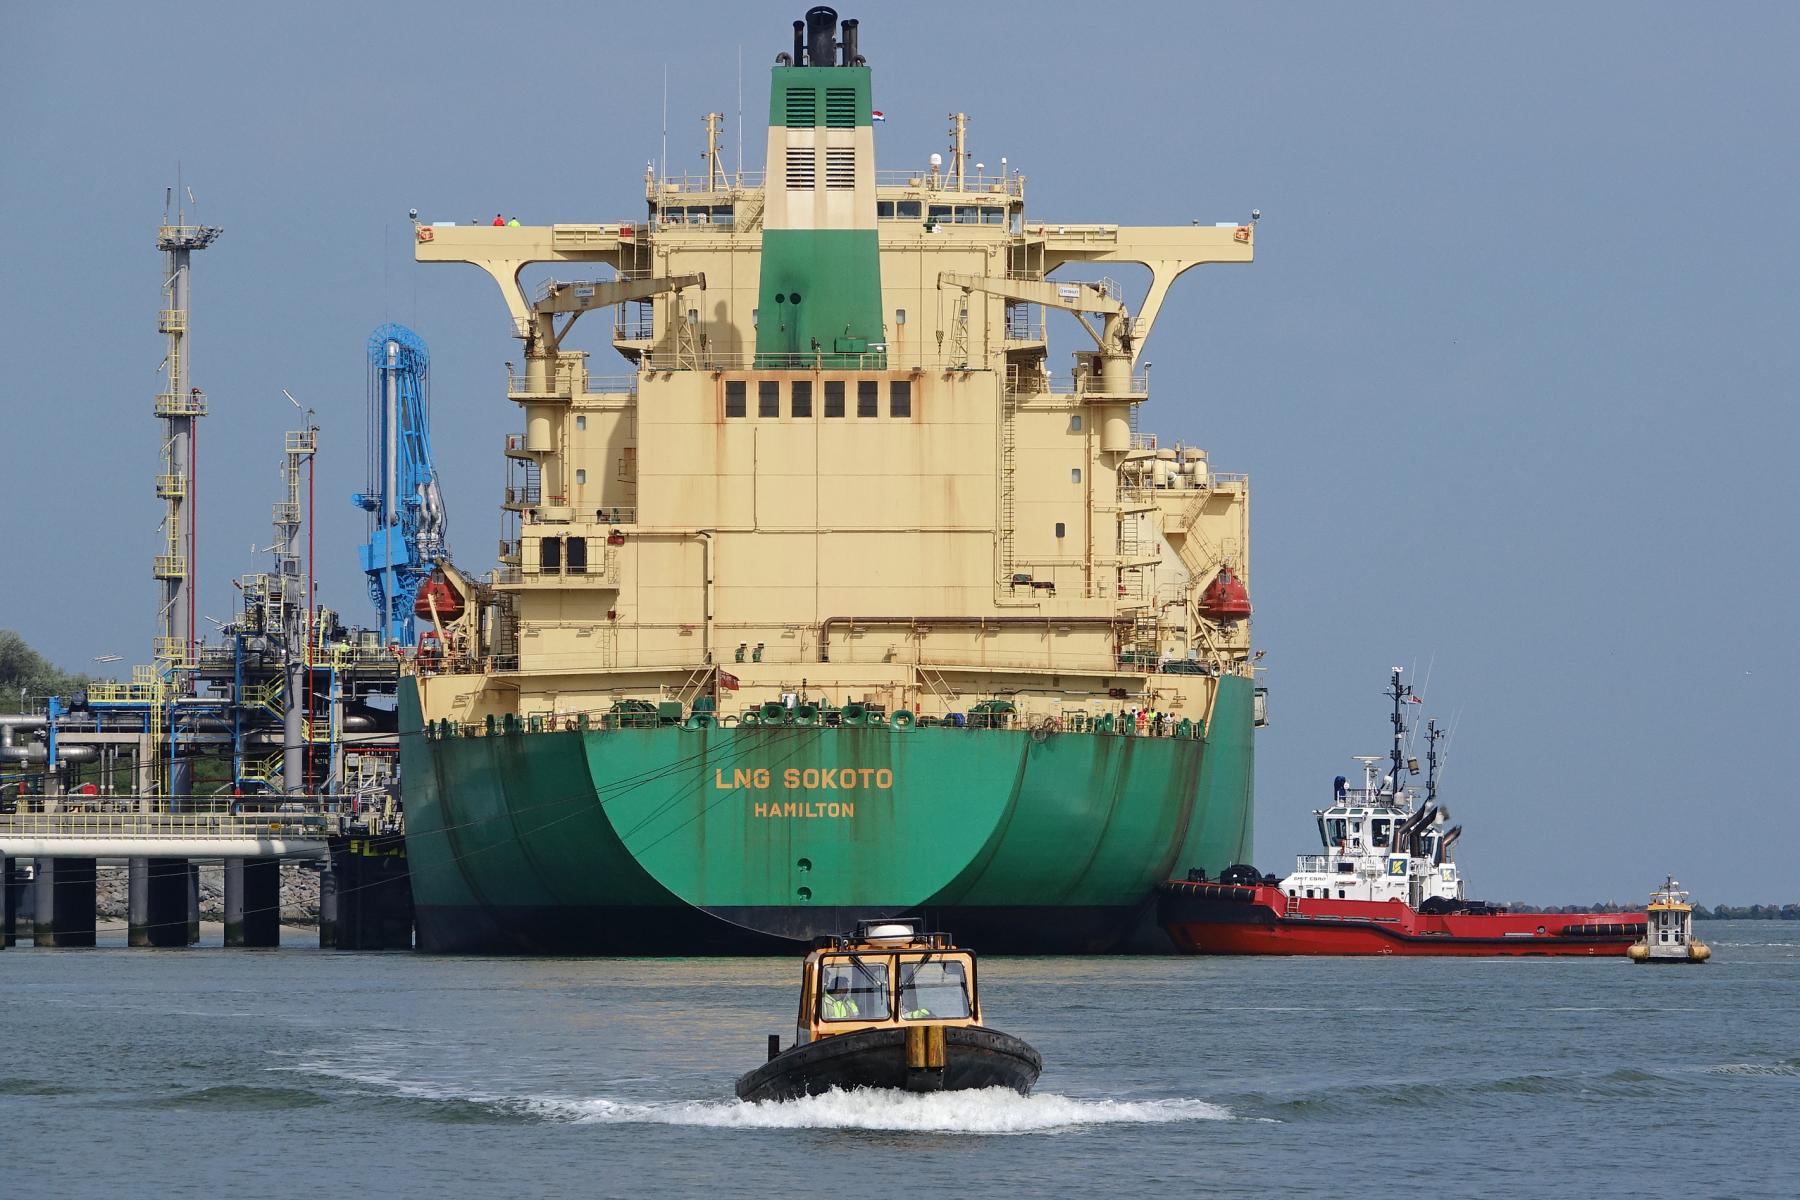 Containerskibet LNG Sokoto, der bruges til at fragte LNG.